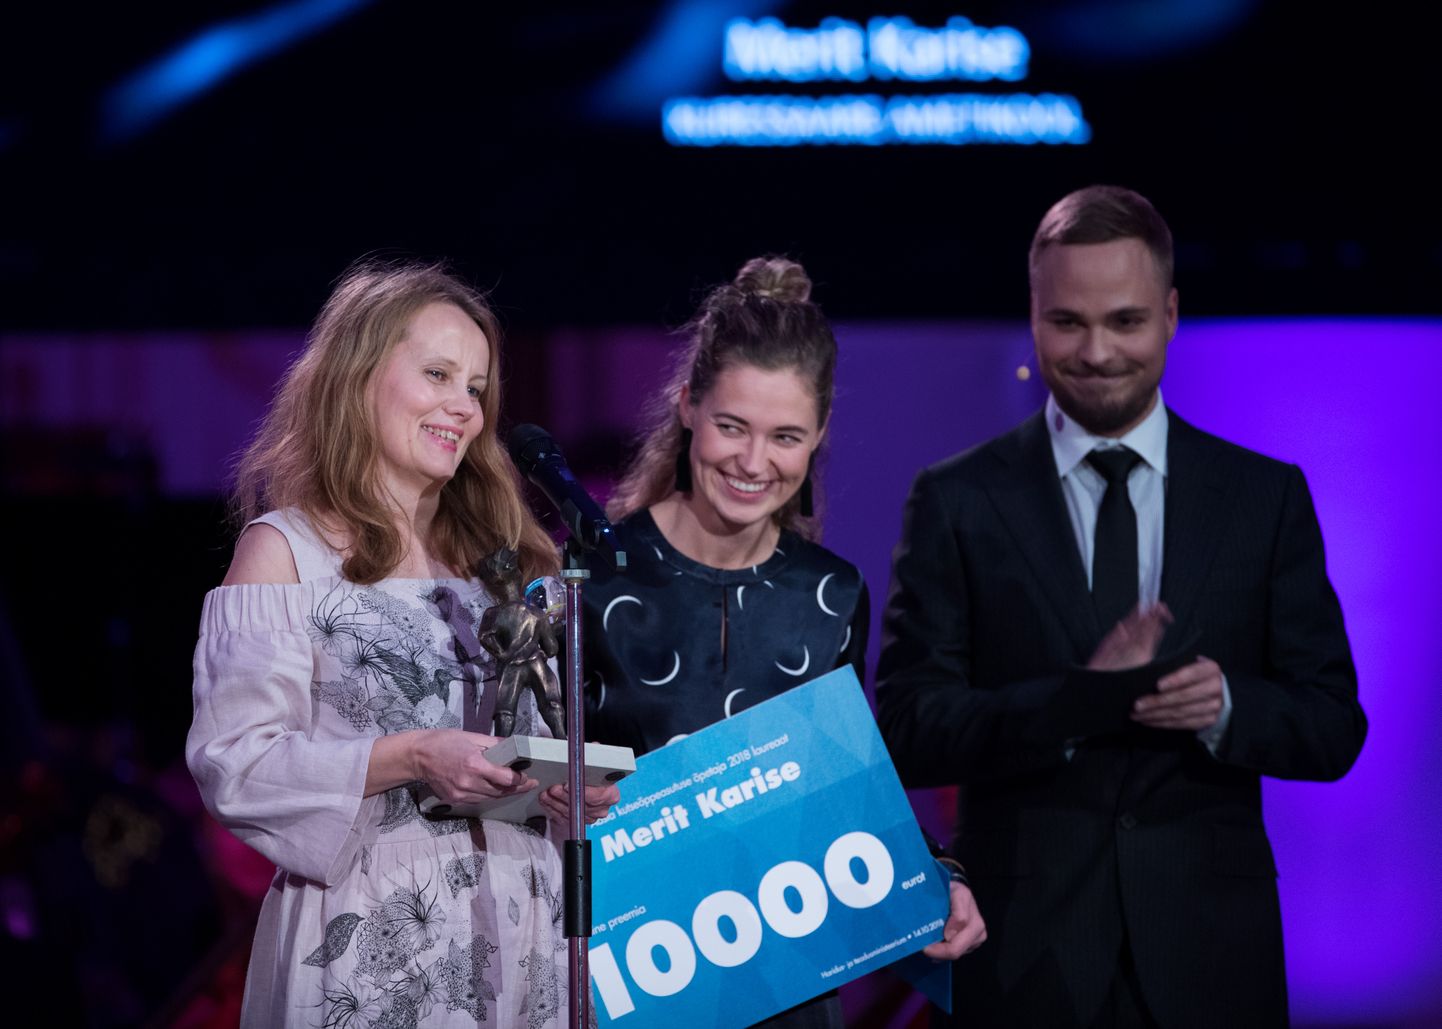 Aasta Õpetaja 2018 gala Estonia kontserdisaalis. 
Merit Karise (vasakul) Kuressaare ametikoolist aasta õpetaja galal. Karise oli aastal 2018 aasta kutseõppeasutuse õpetaja laureaat.